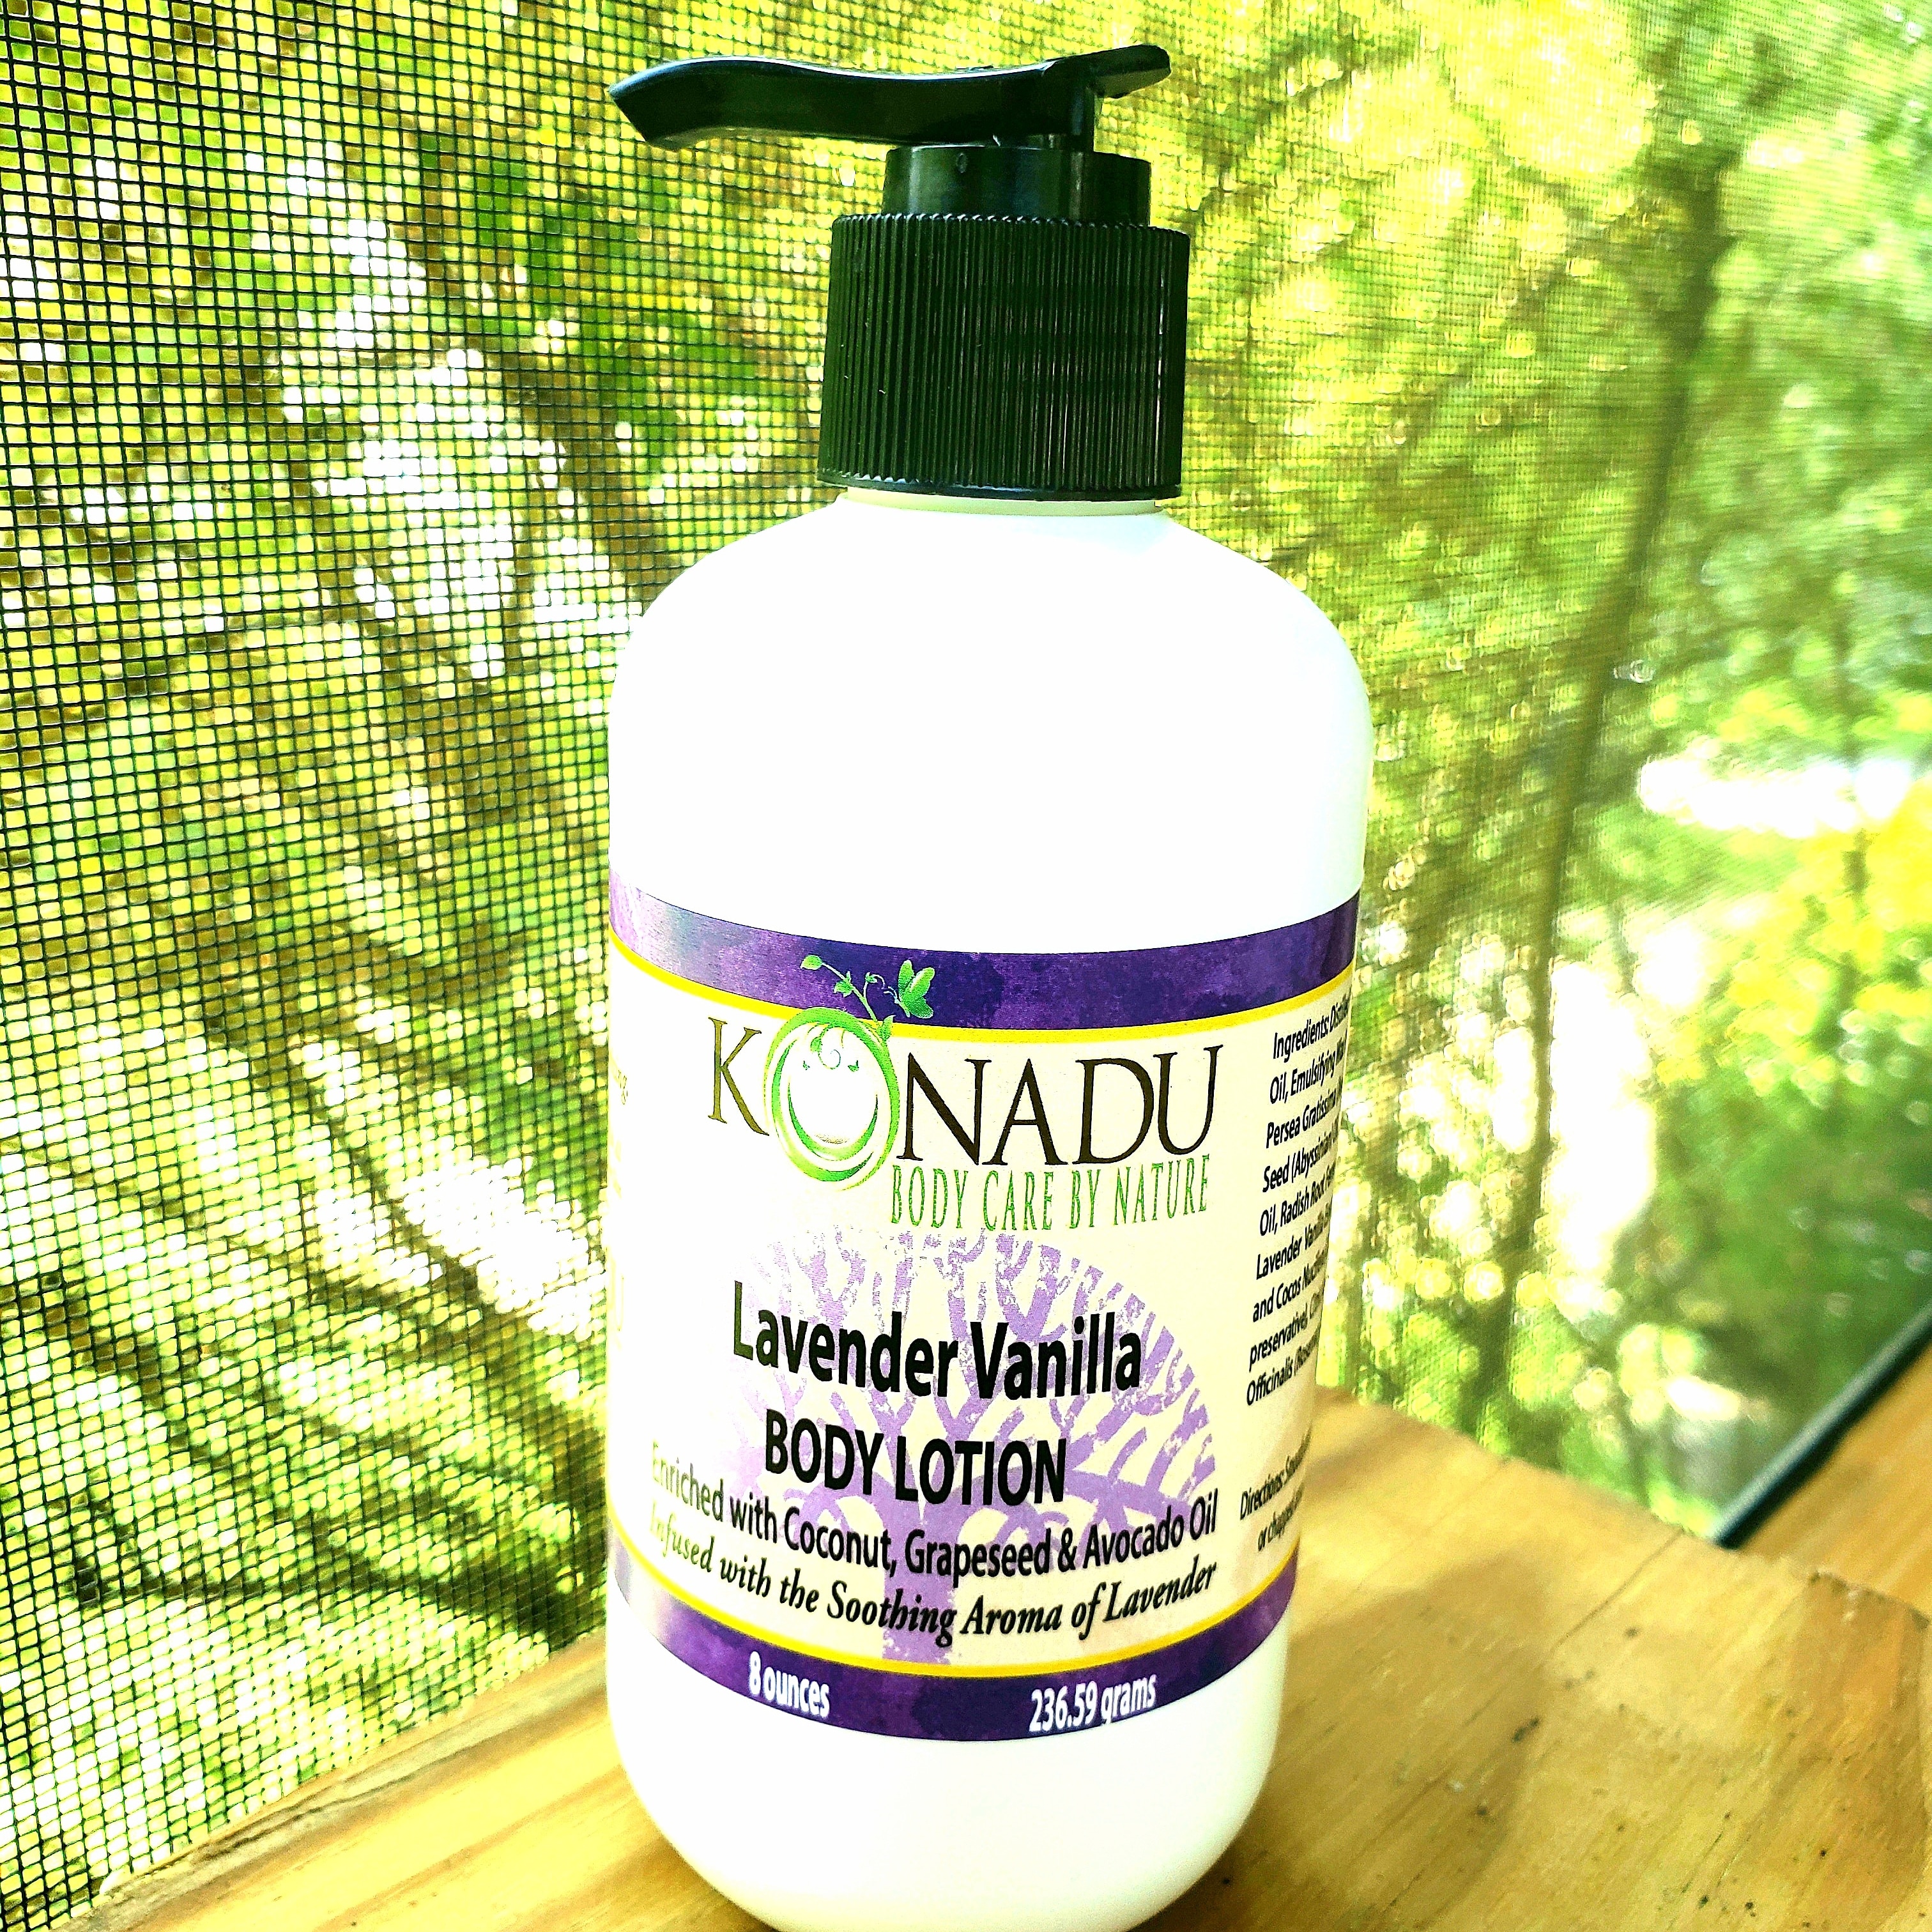 Lavender Body Lotion - Konadu Body Care by Nature